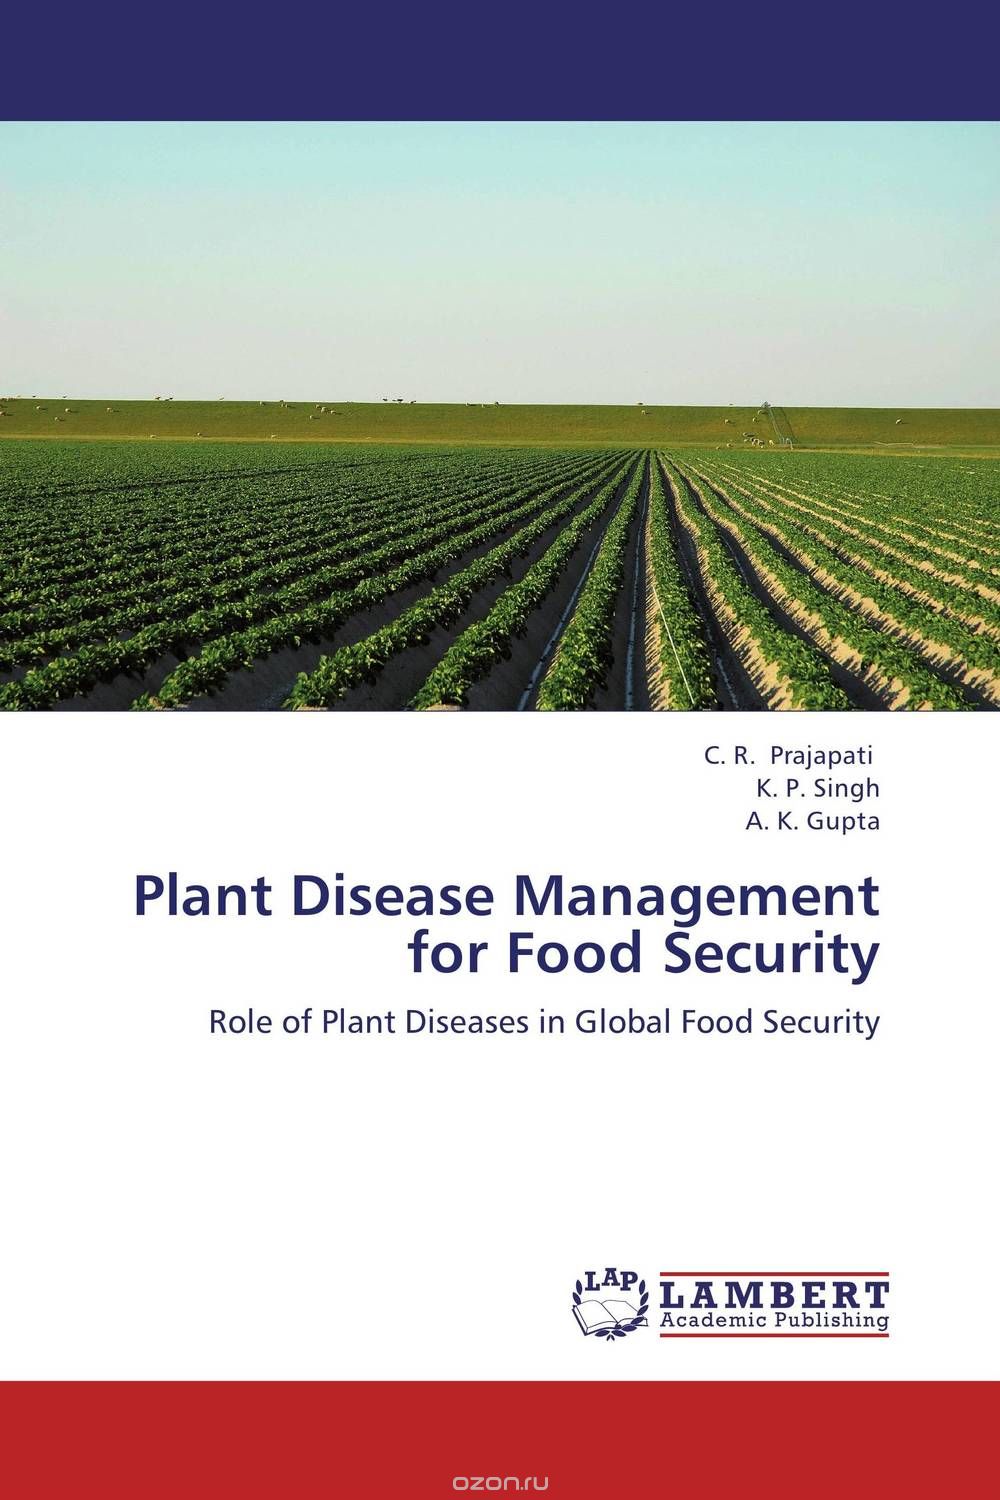 Скачать книгу "Plant Disease Management for Food Security"